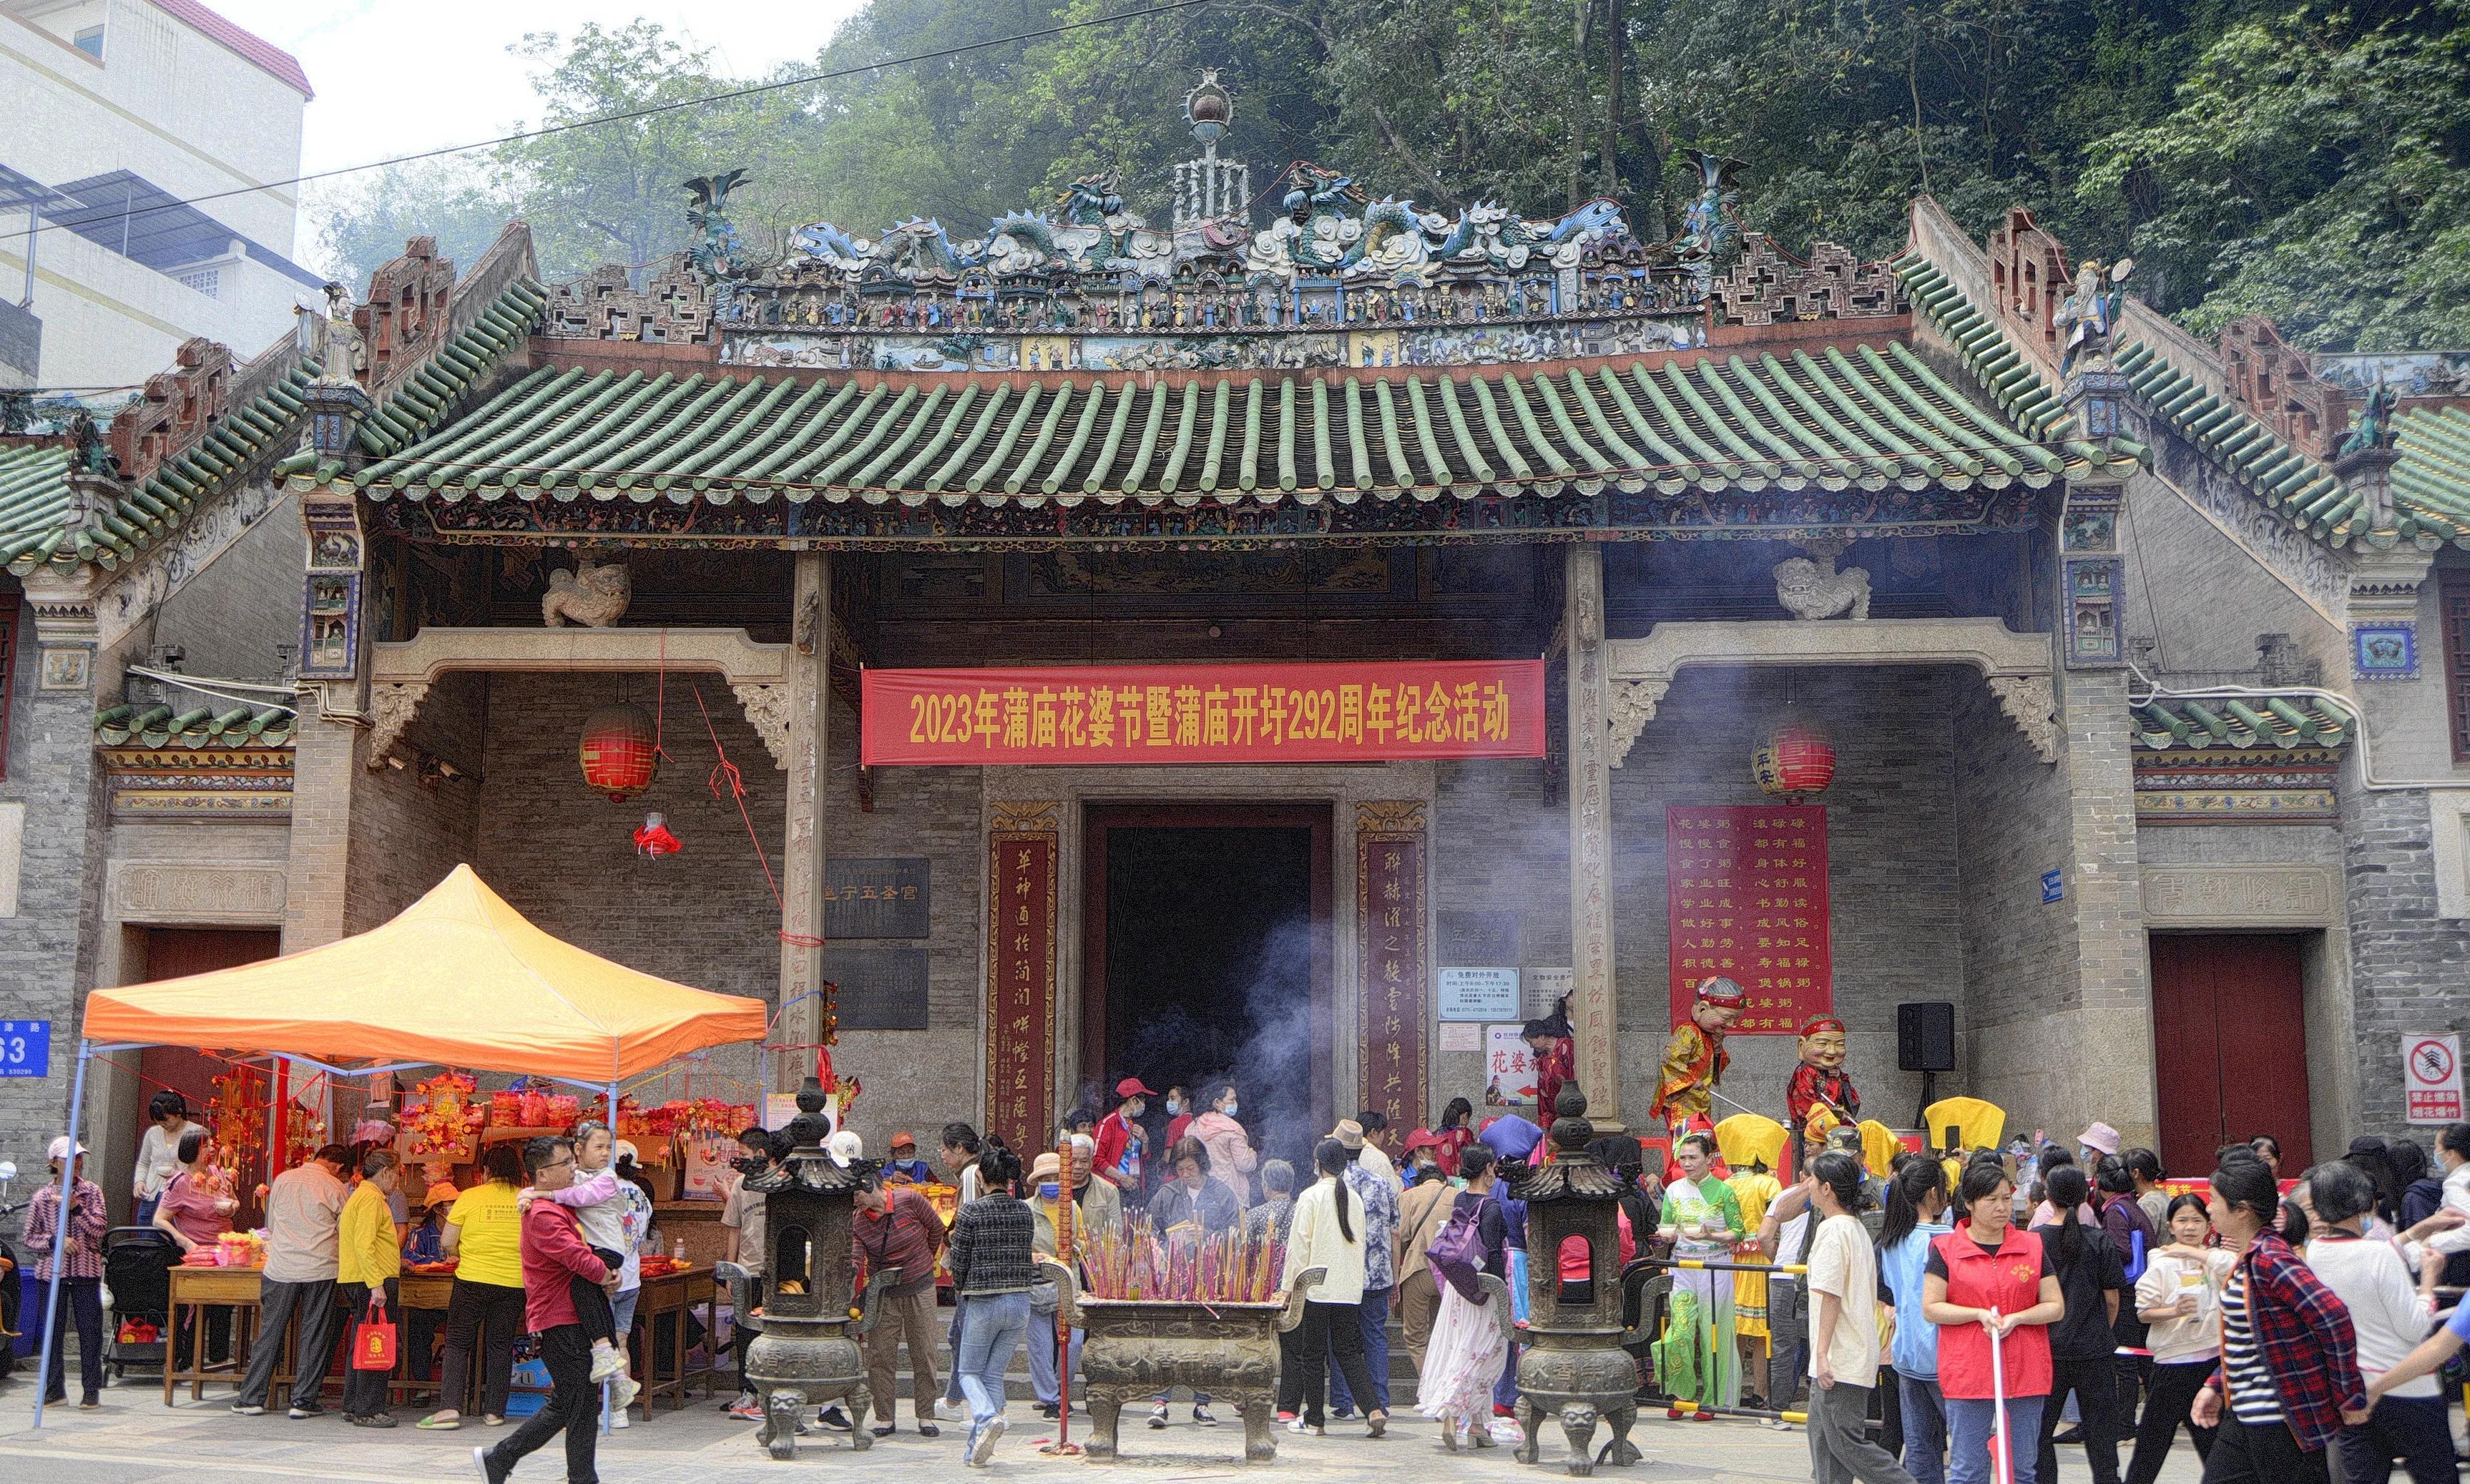 世界河婆文化节 11月在新山举行 - 国内 - 全国综合